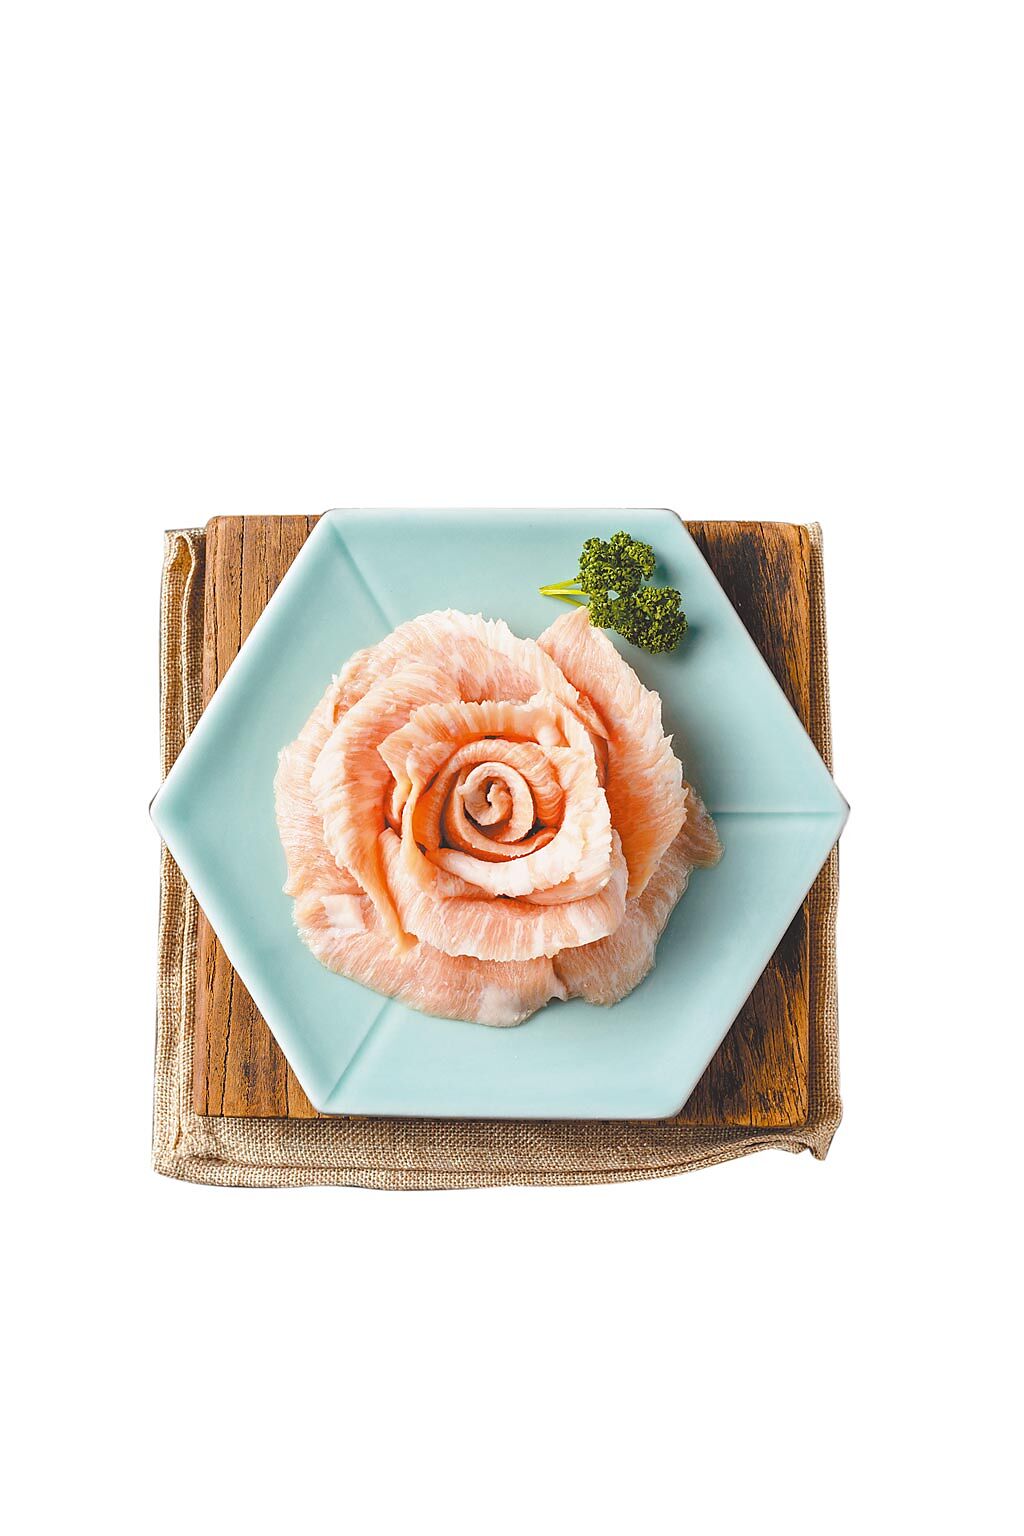 即日起至5月16日，民眾帶母親到姜滿堂吃韓式烤肉，用餐直接送上盤成玫瑰花形狀的「活菌松阪豬」。（豆府餐飲集團提供）